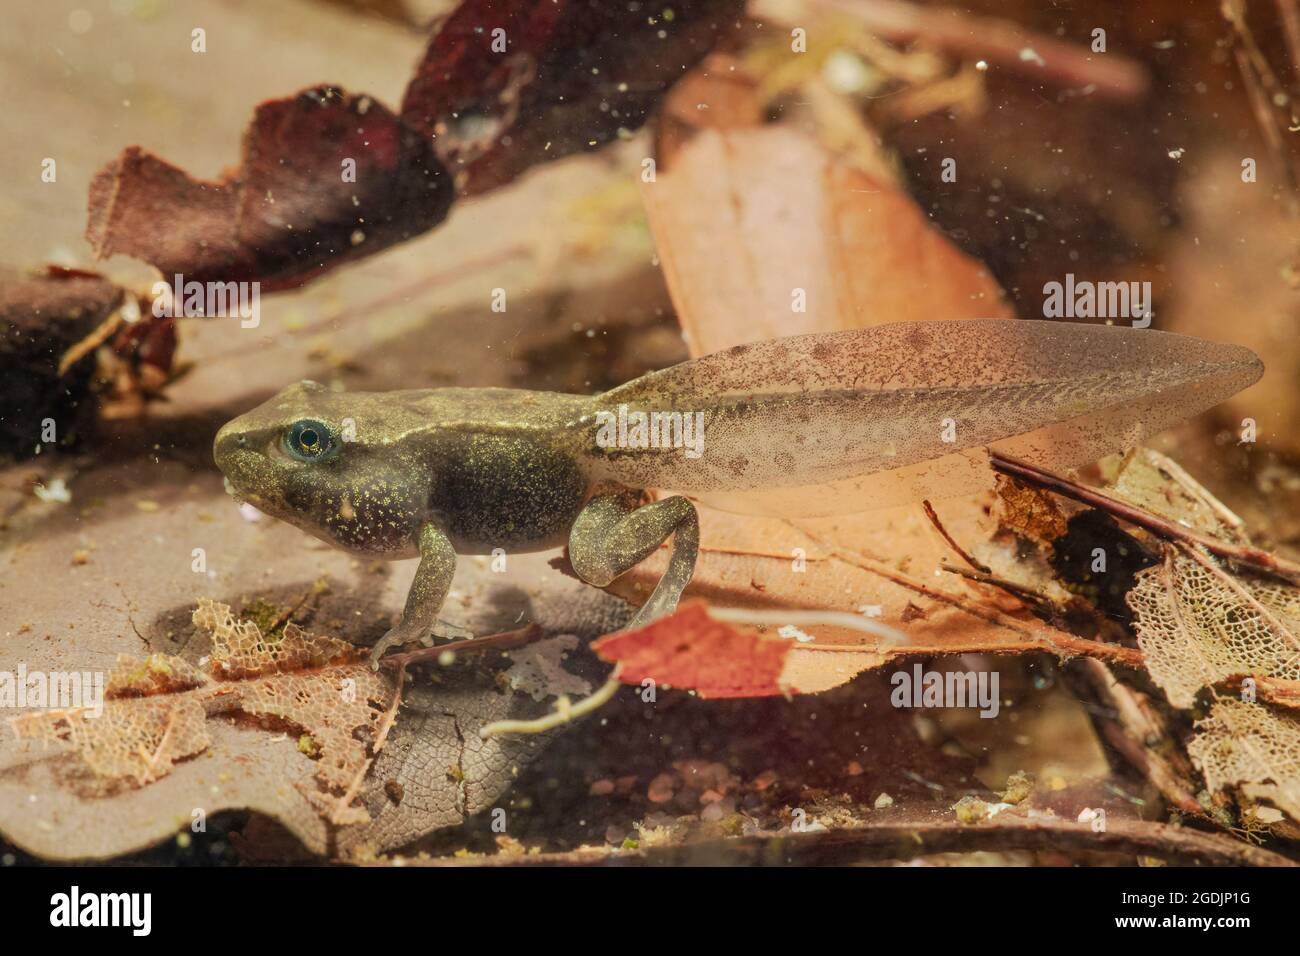 Rana común, rana de hierba (Rana temporaria), tadpole justo antes de terminar la metamorfosis, Alemania Foto de stock